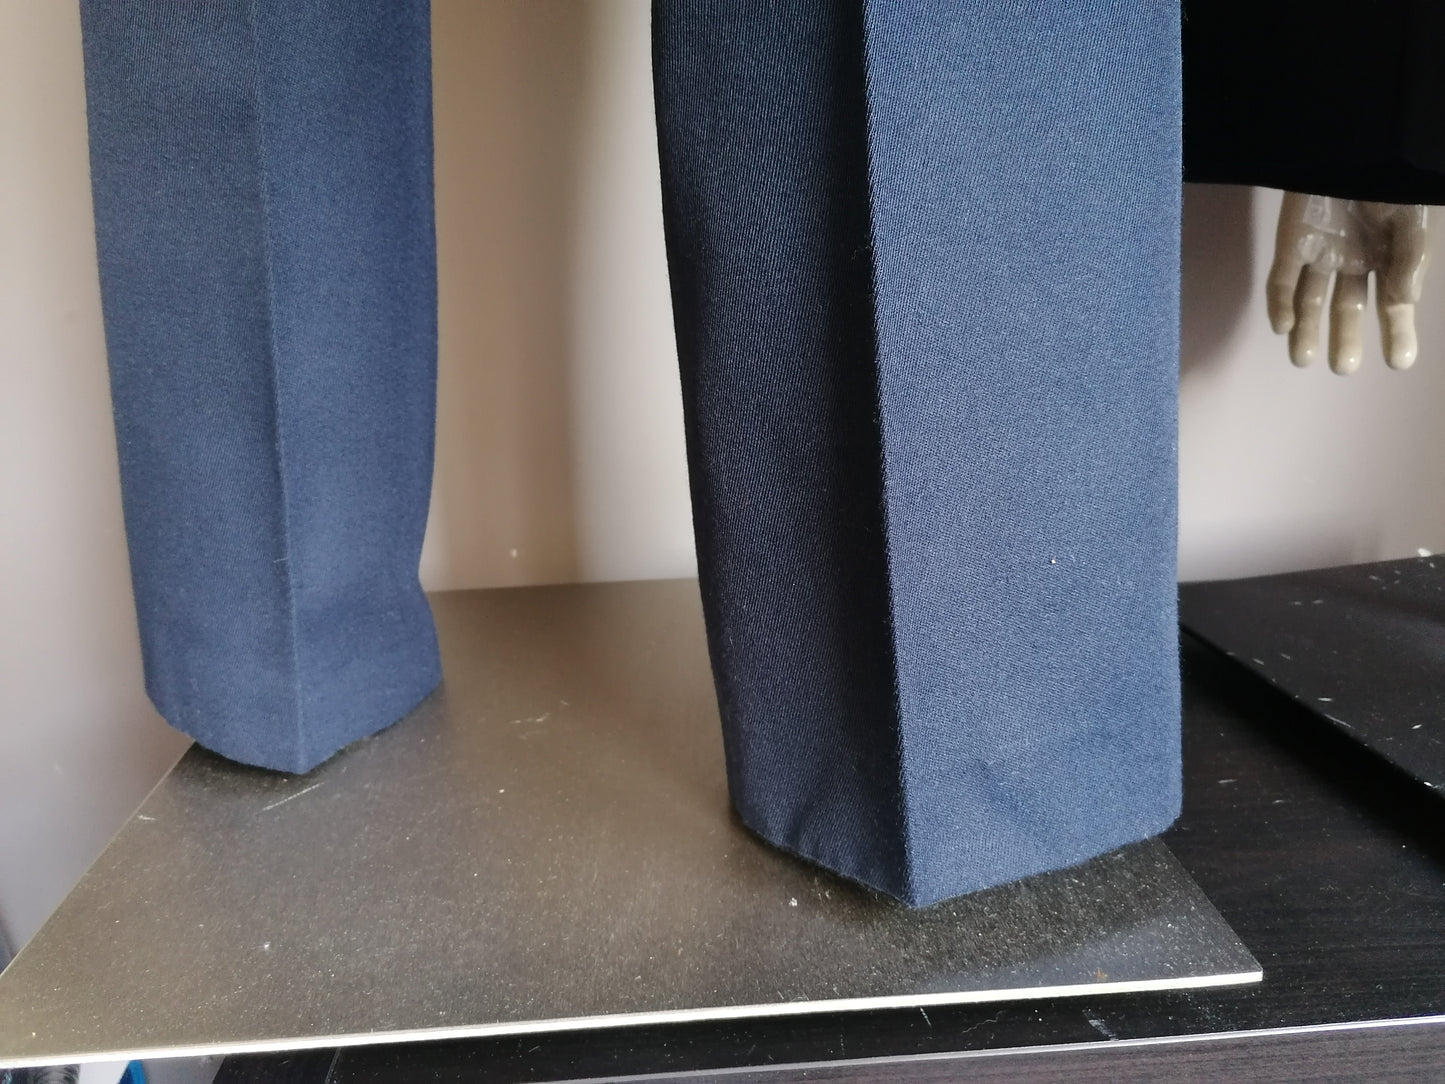 Costume de laine vintage. Couleur bleu foncé. Taille 56 / XL.